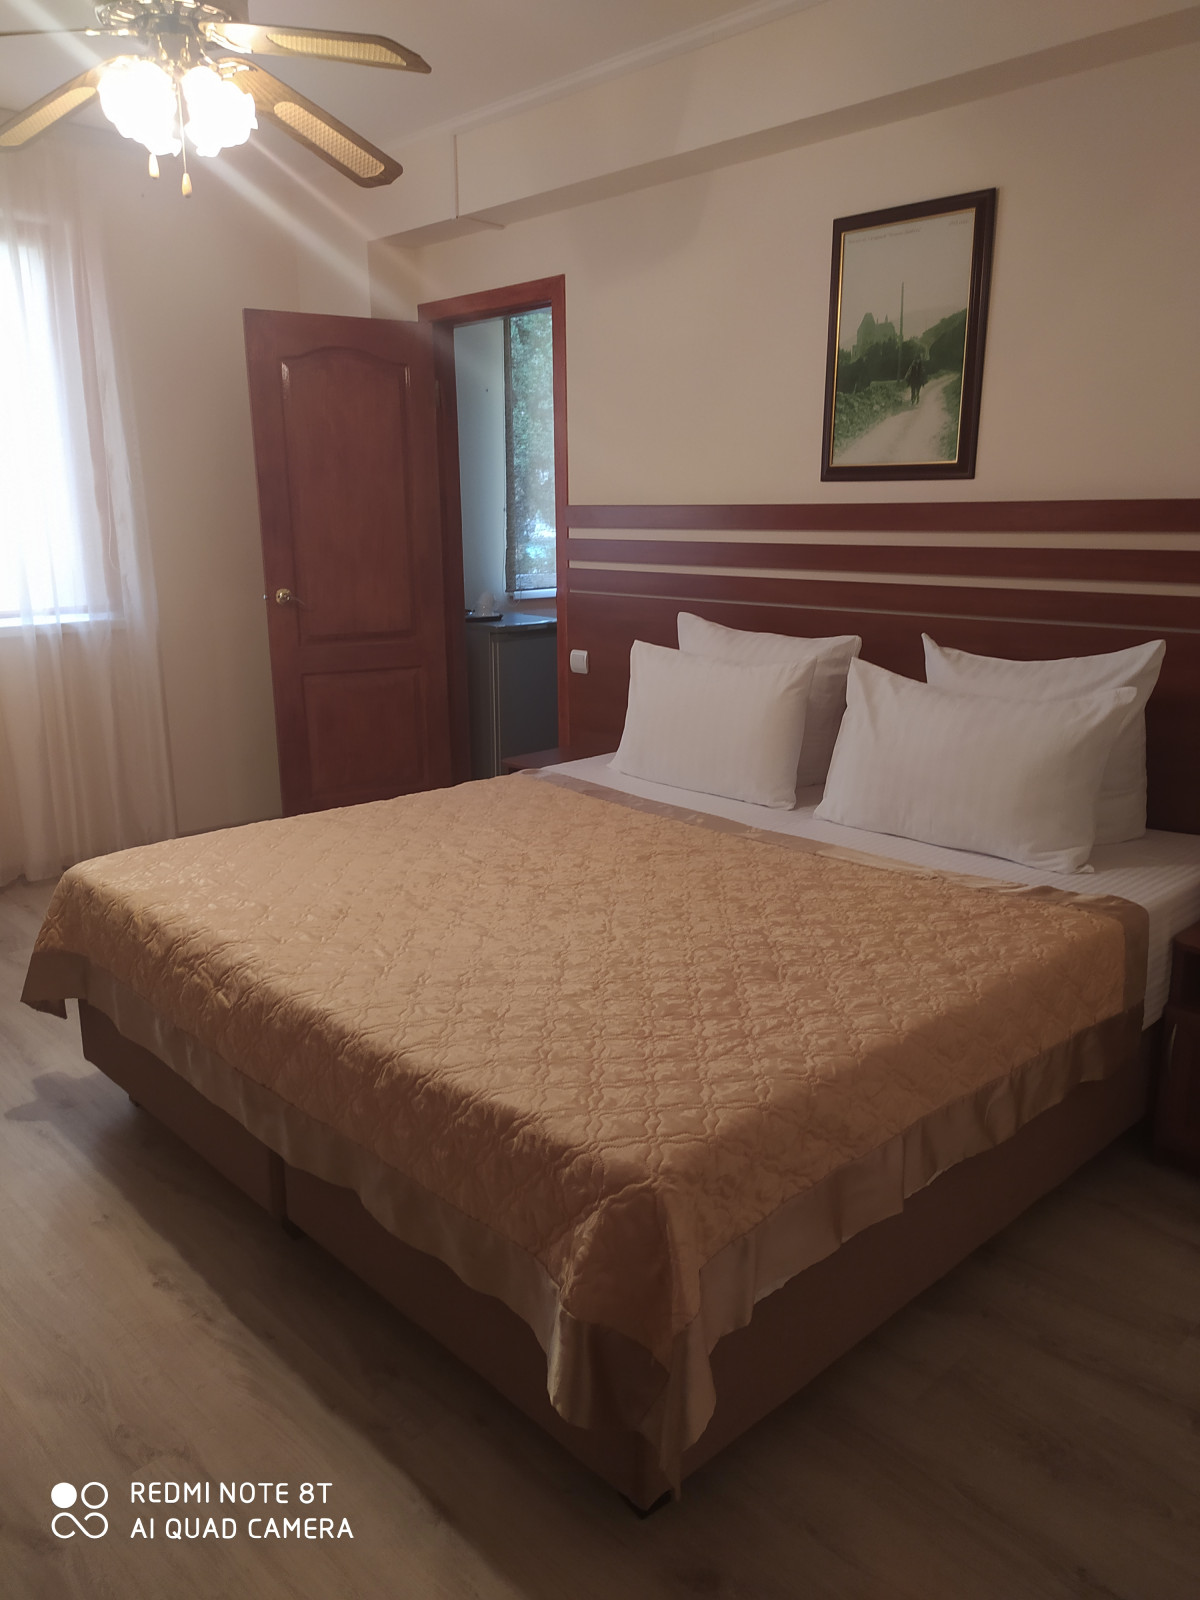 Крым Утес гостиница Парадиз номер Стандарт с видом на гостиницы без балкона